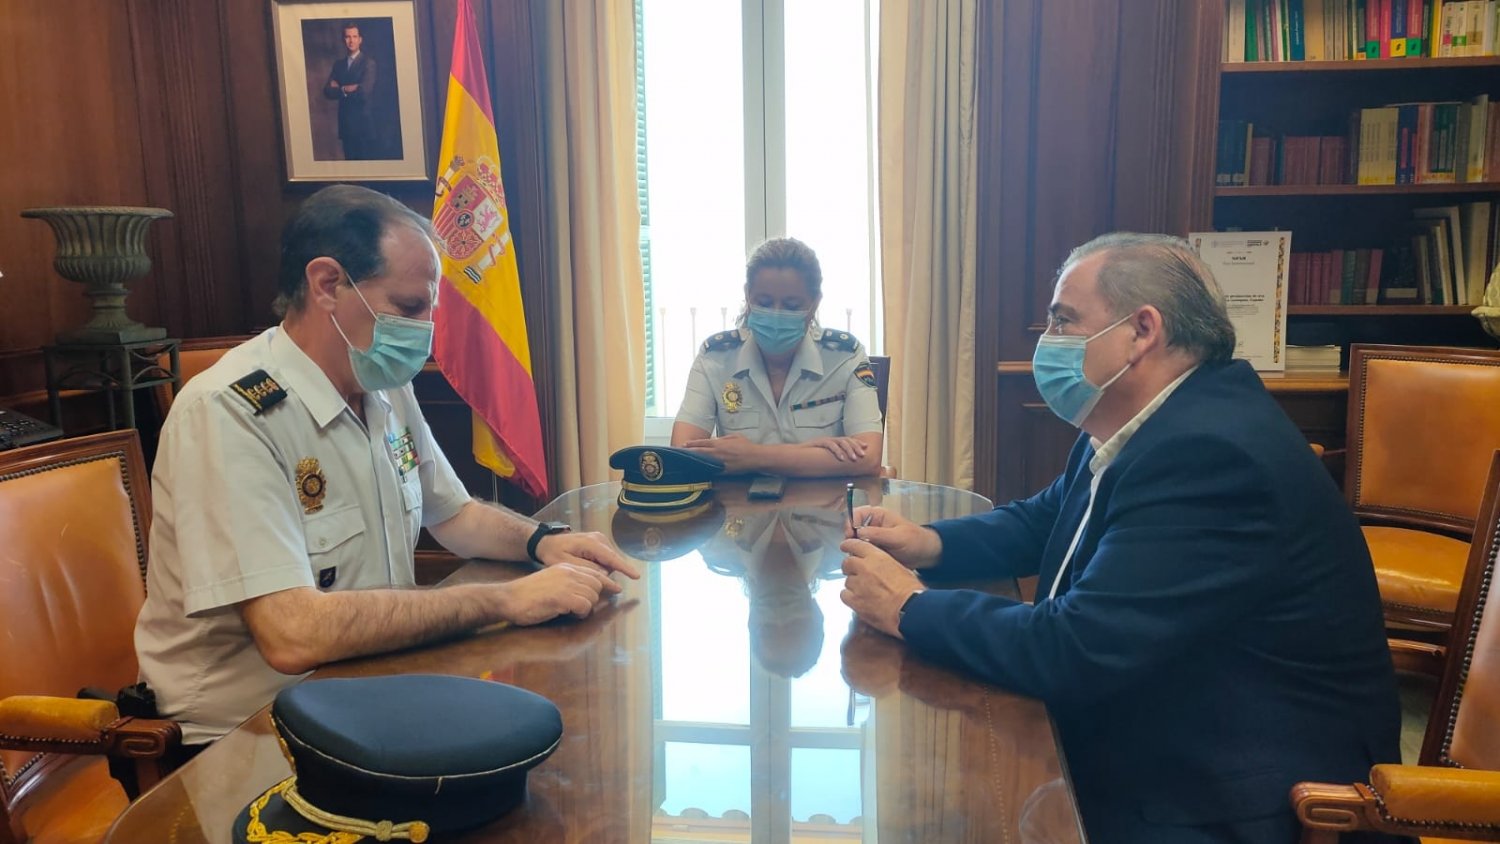 Reunión de despedida entre el subdelegado del gobierno en Málaga y el Comisario jefe provincial